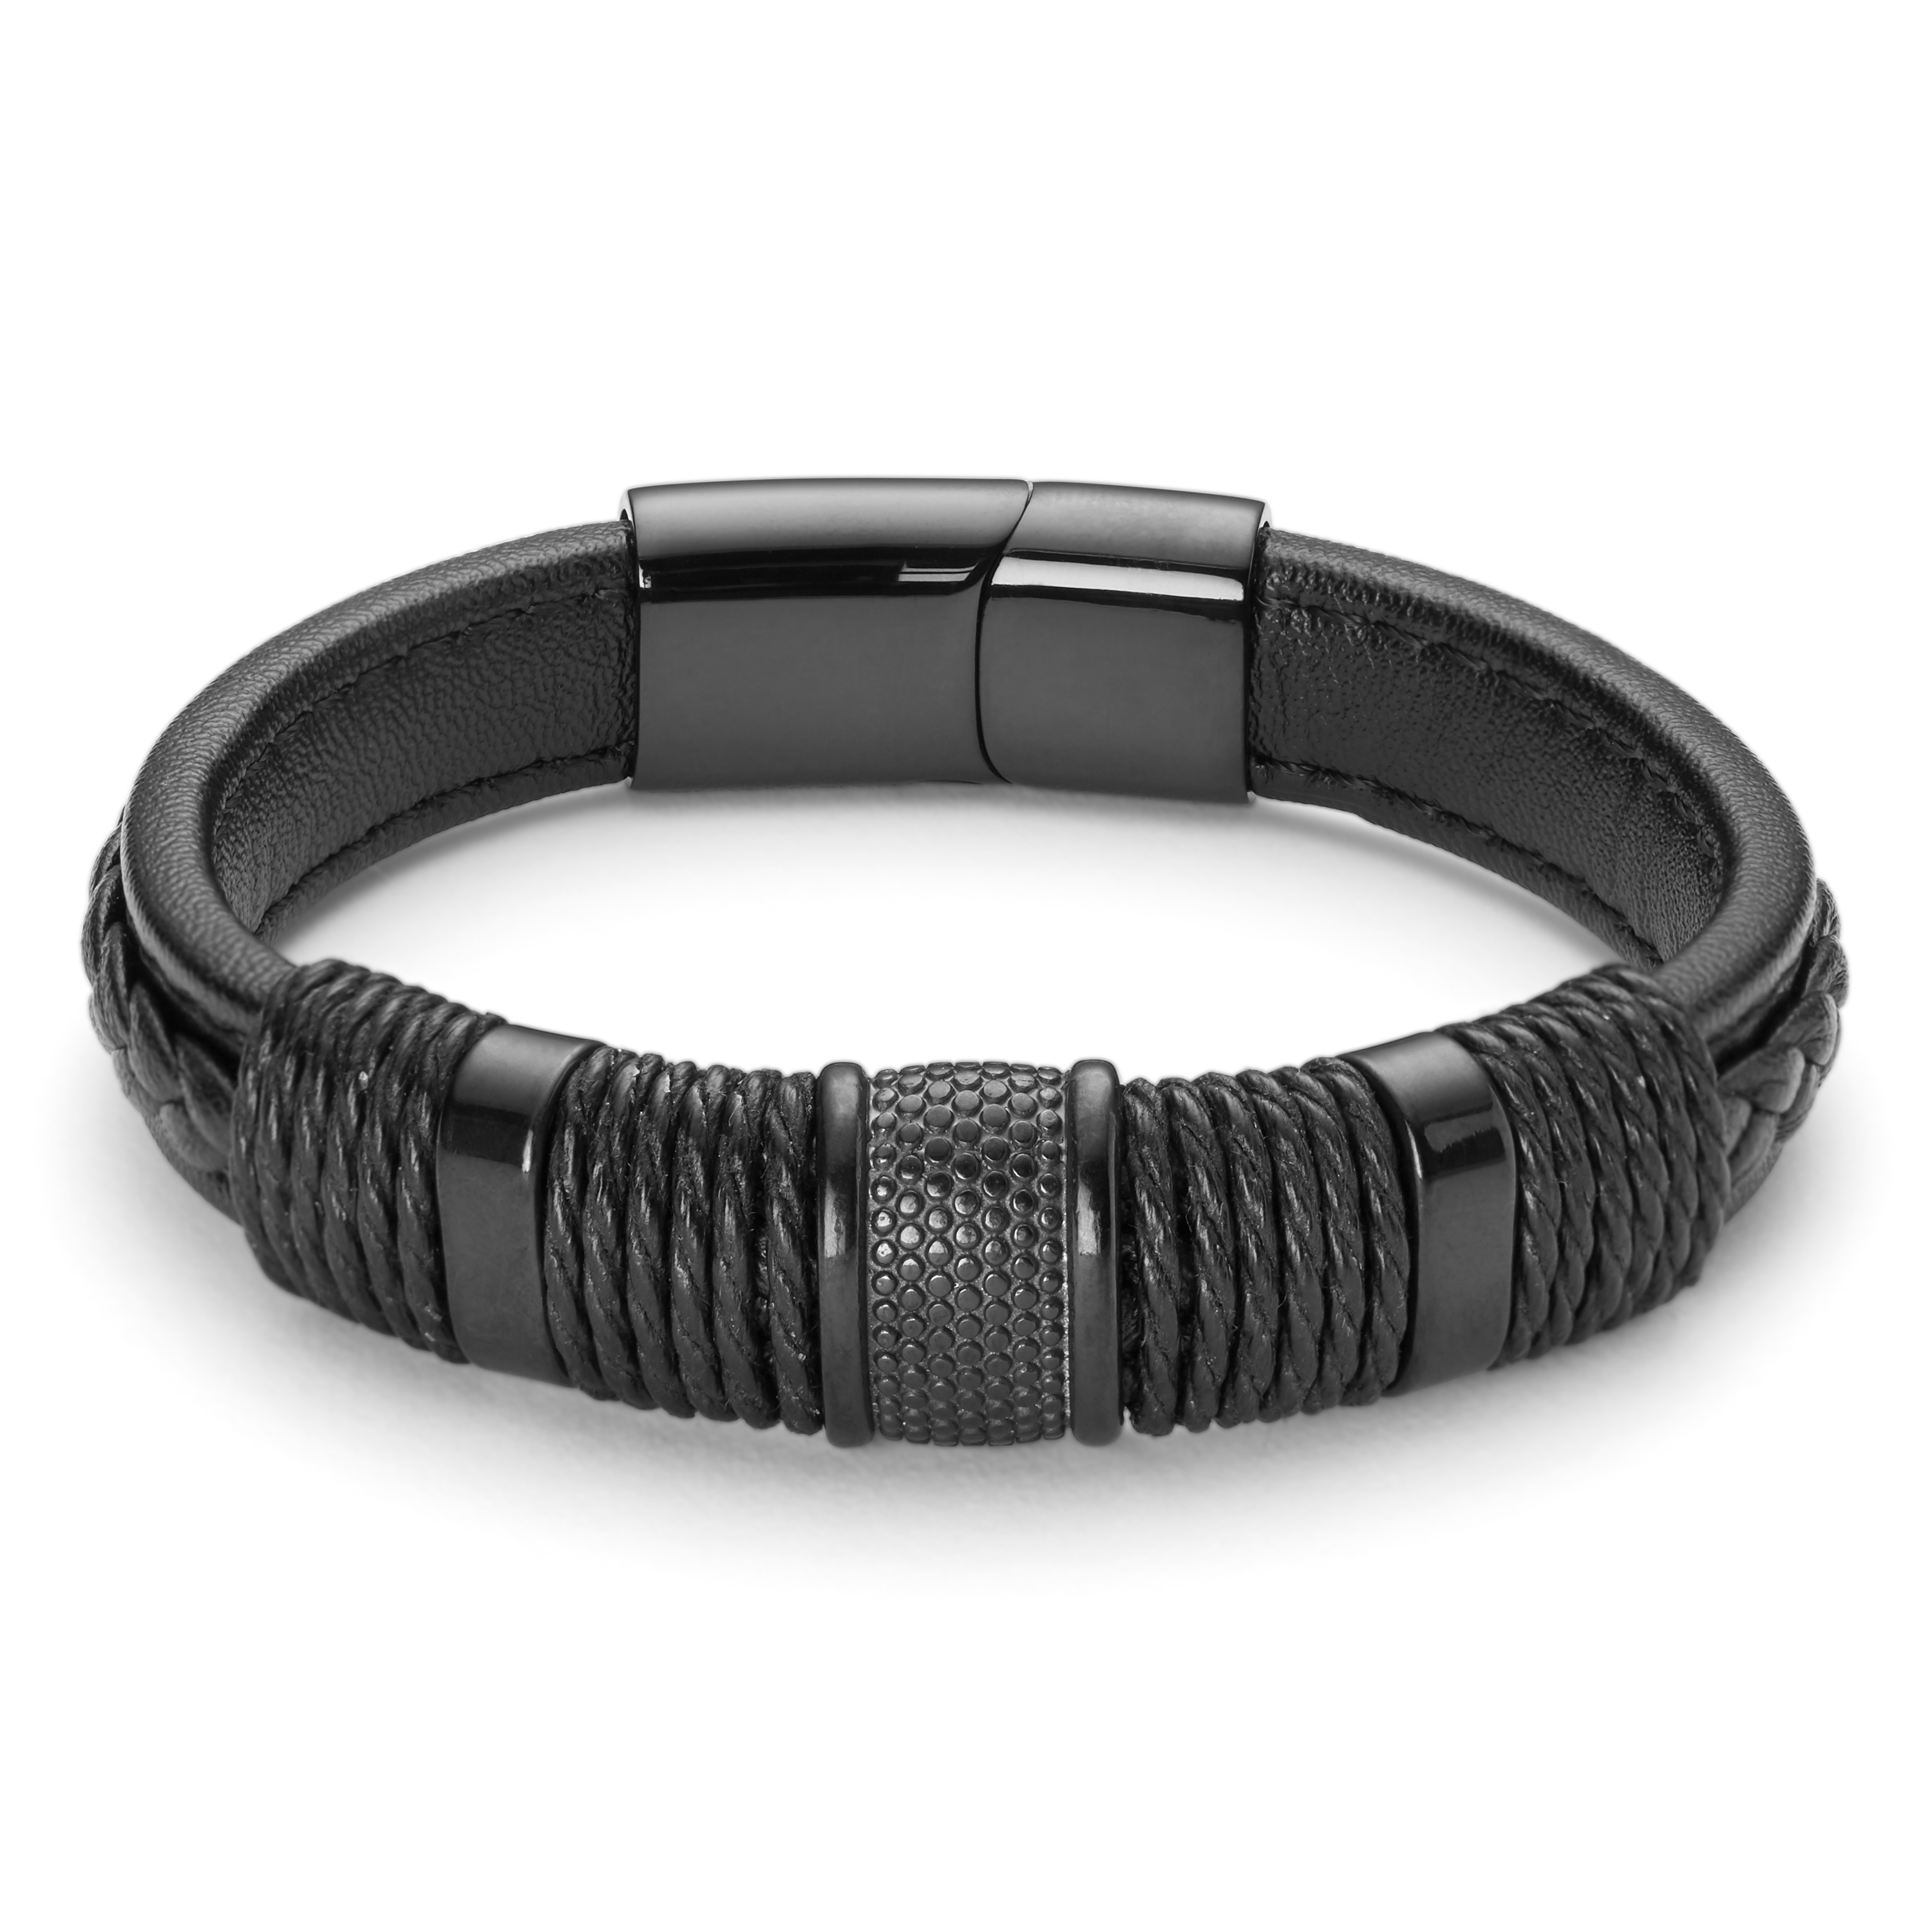 Dad Bracelet - Personalized Leather Name Bracelet for Men